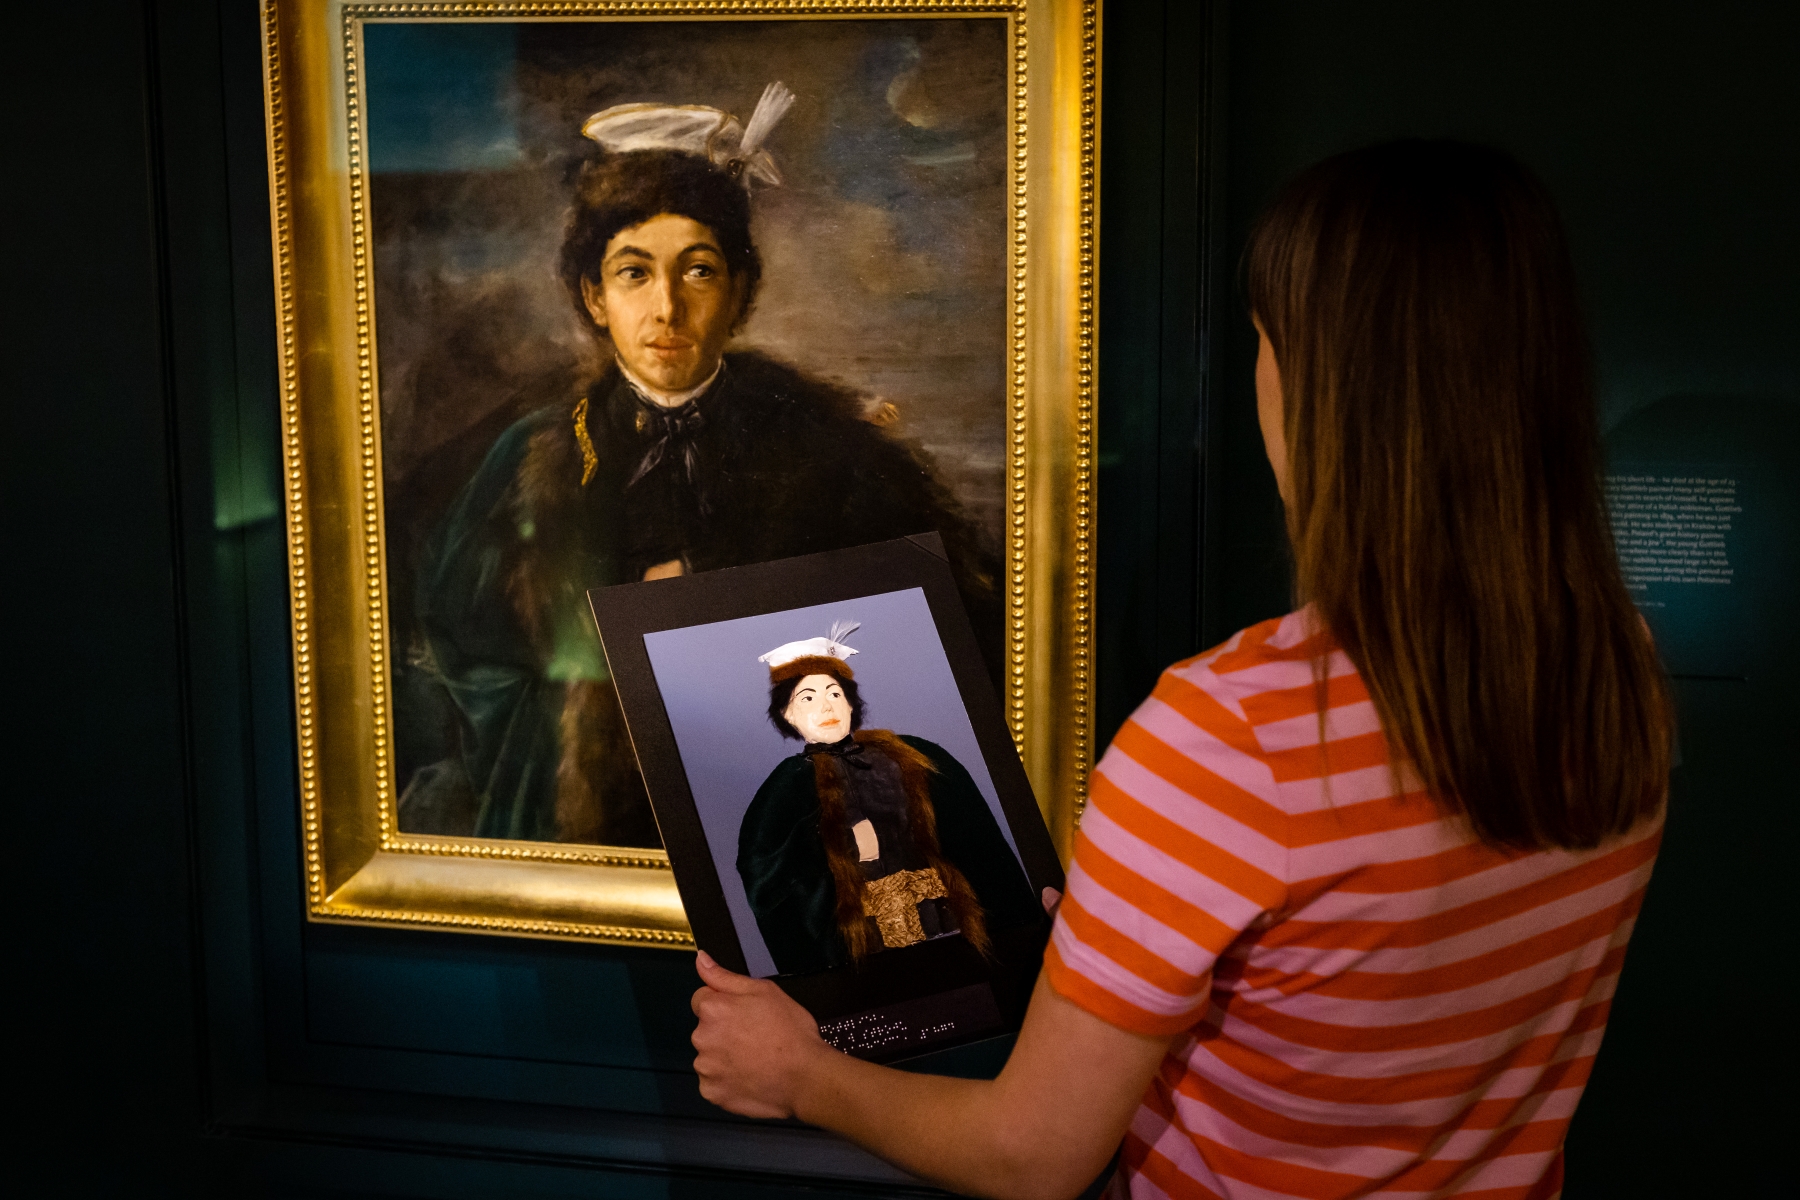 Kobieta stoi przy obrazie Maurycego Gottlieba na wystawie stałej w Muzeum POLIN i trzyma przed sobą tyflografikę tego obrazu.